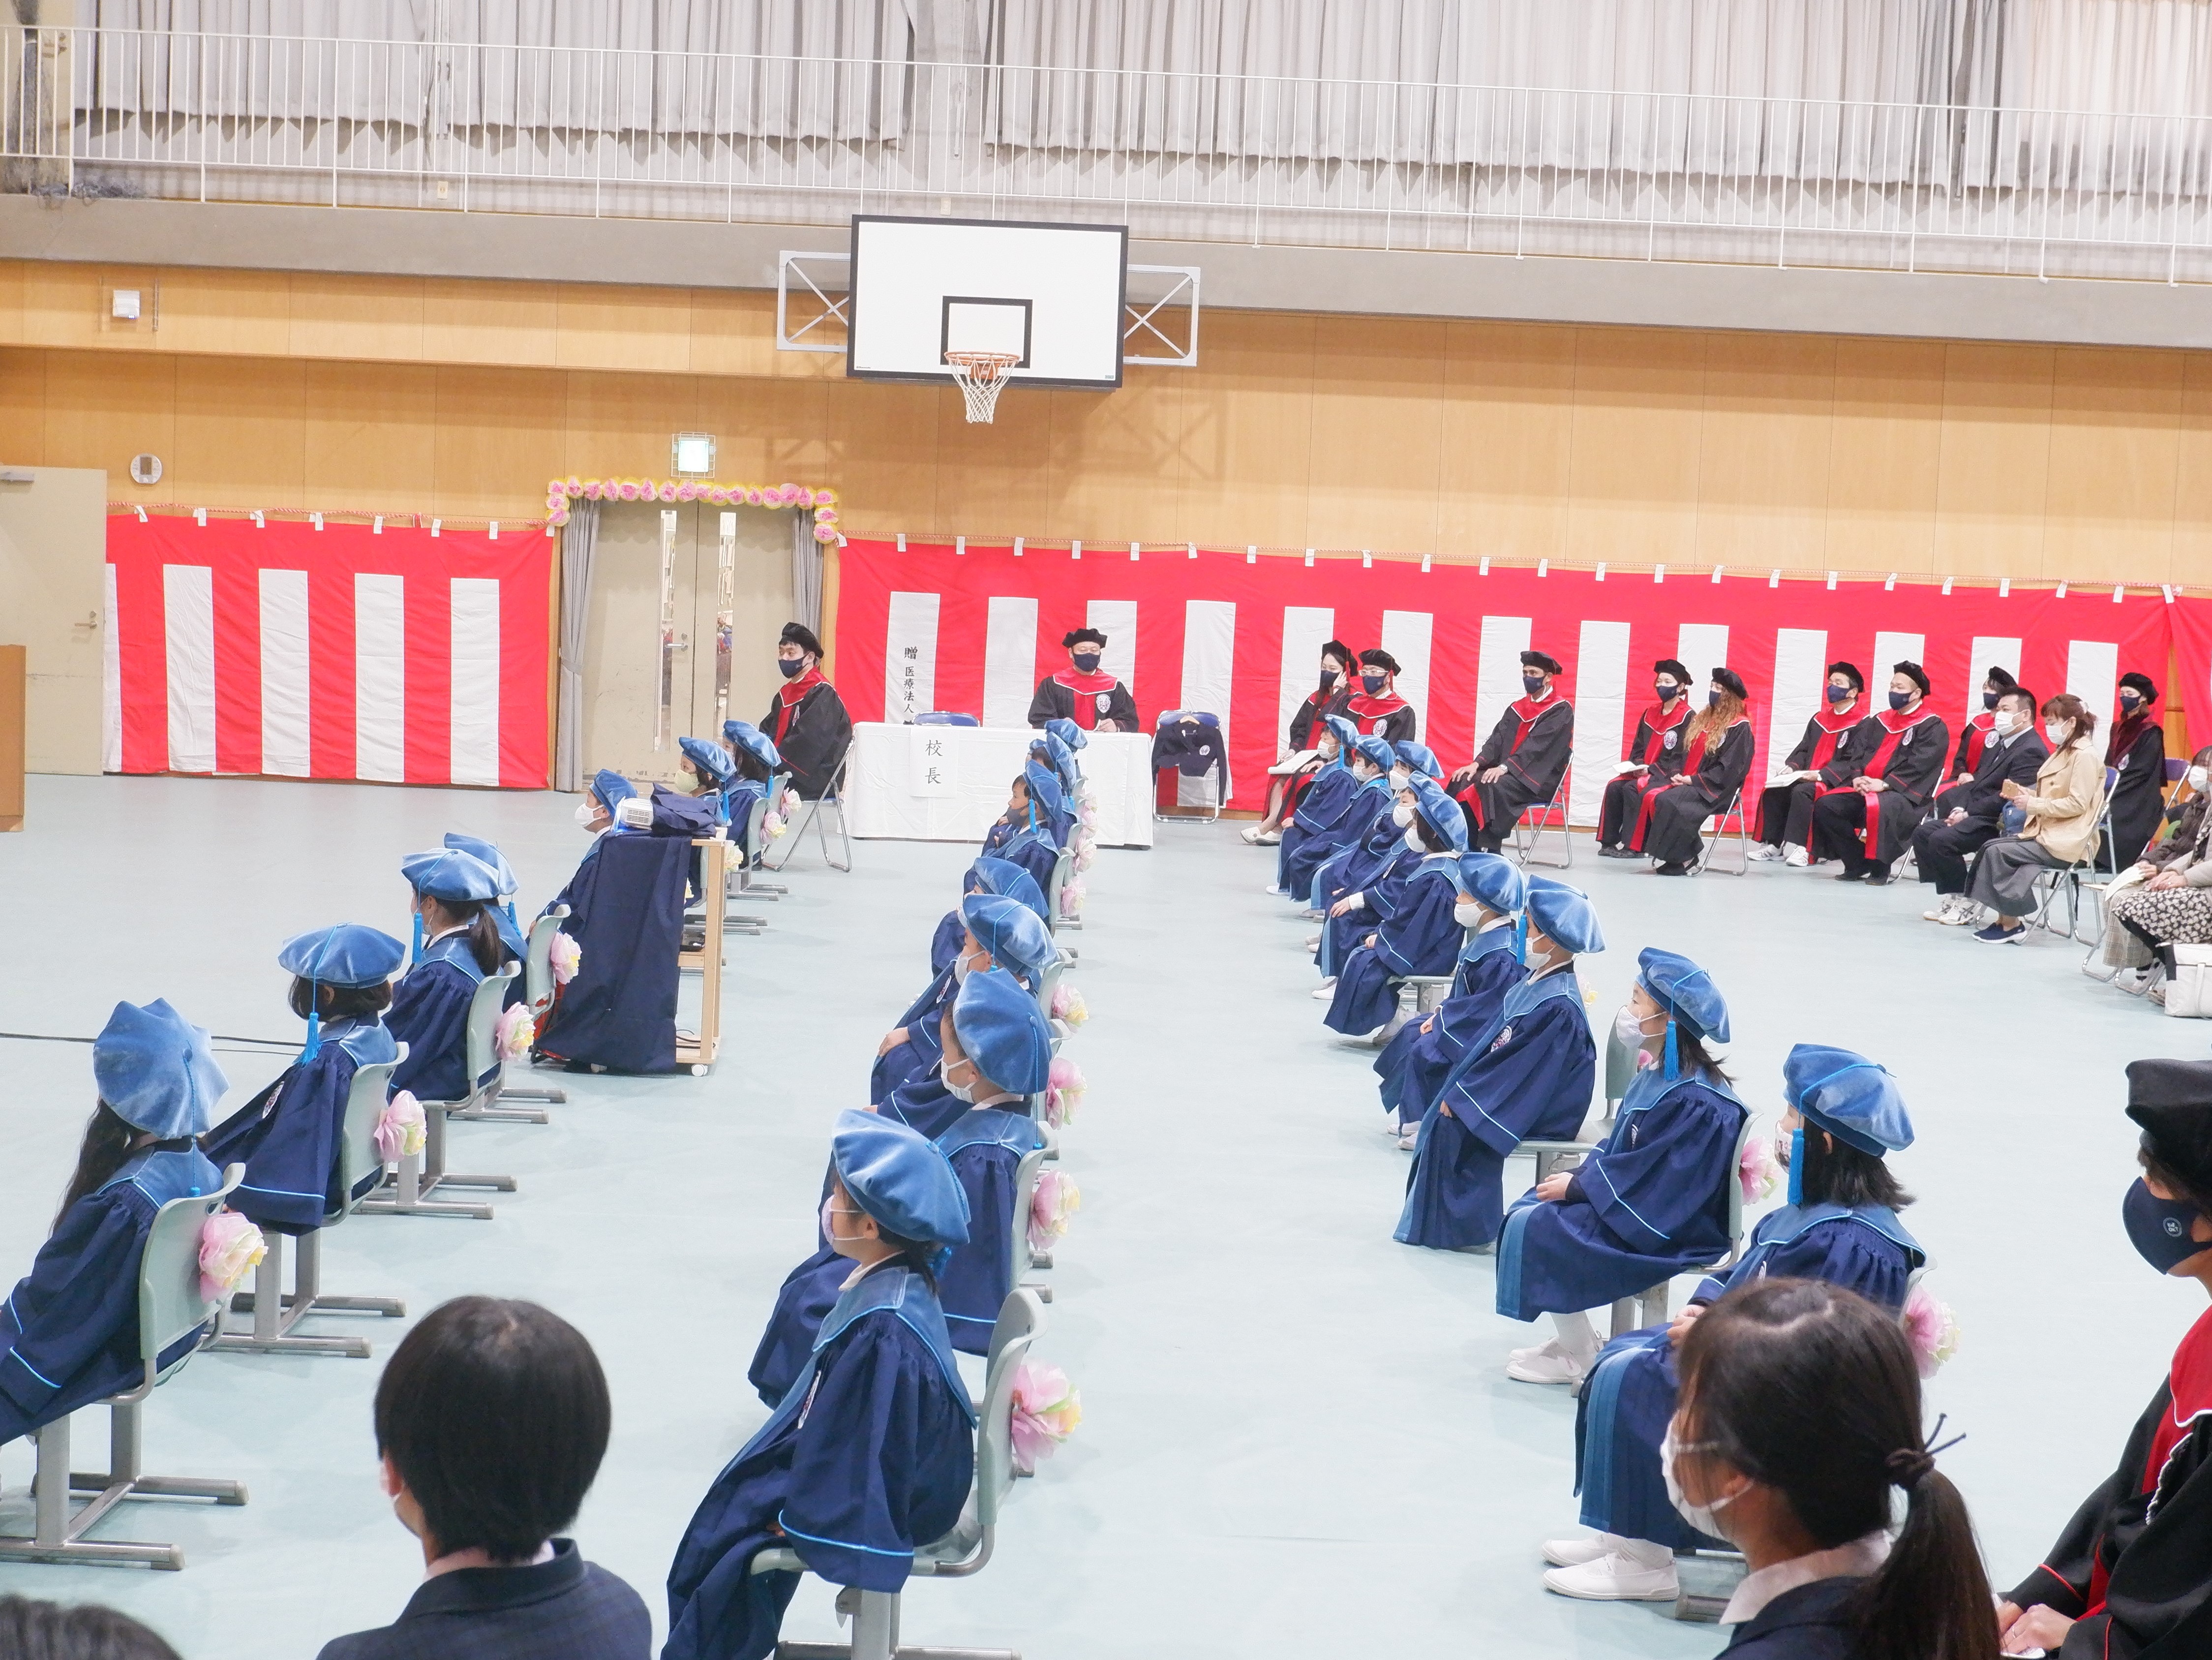 小学校 式 市 大阪 入学 密回避、青空の下で 大阪市の小学校で入学式